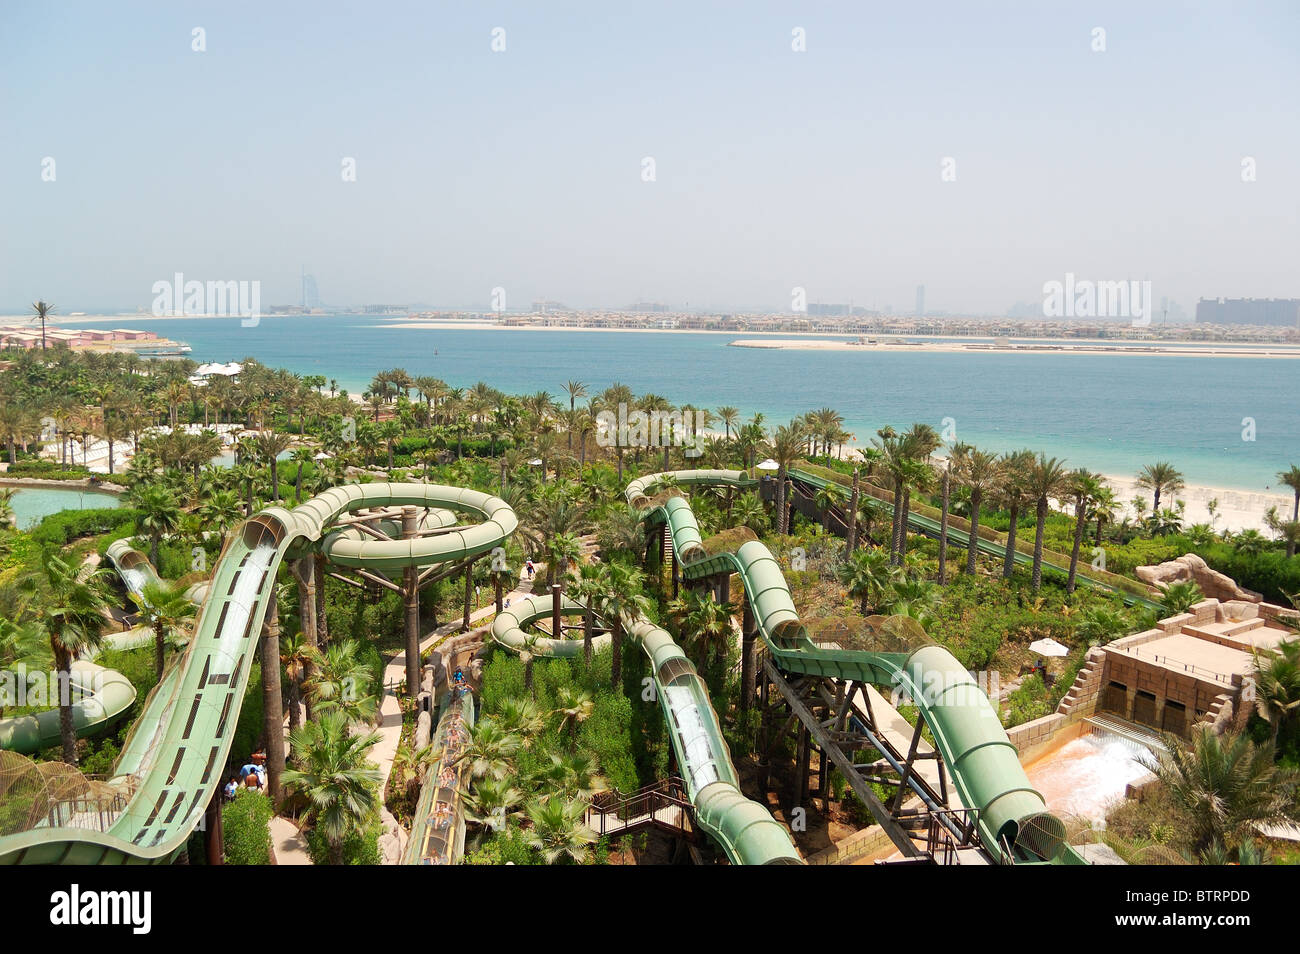 Waterpark of Atlantis the Palm hotel, Dubai, UAE Stock Photo